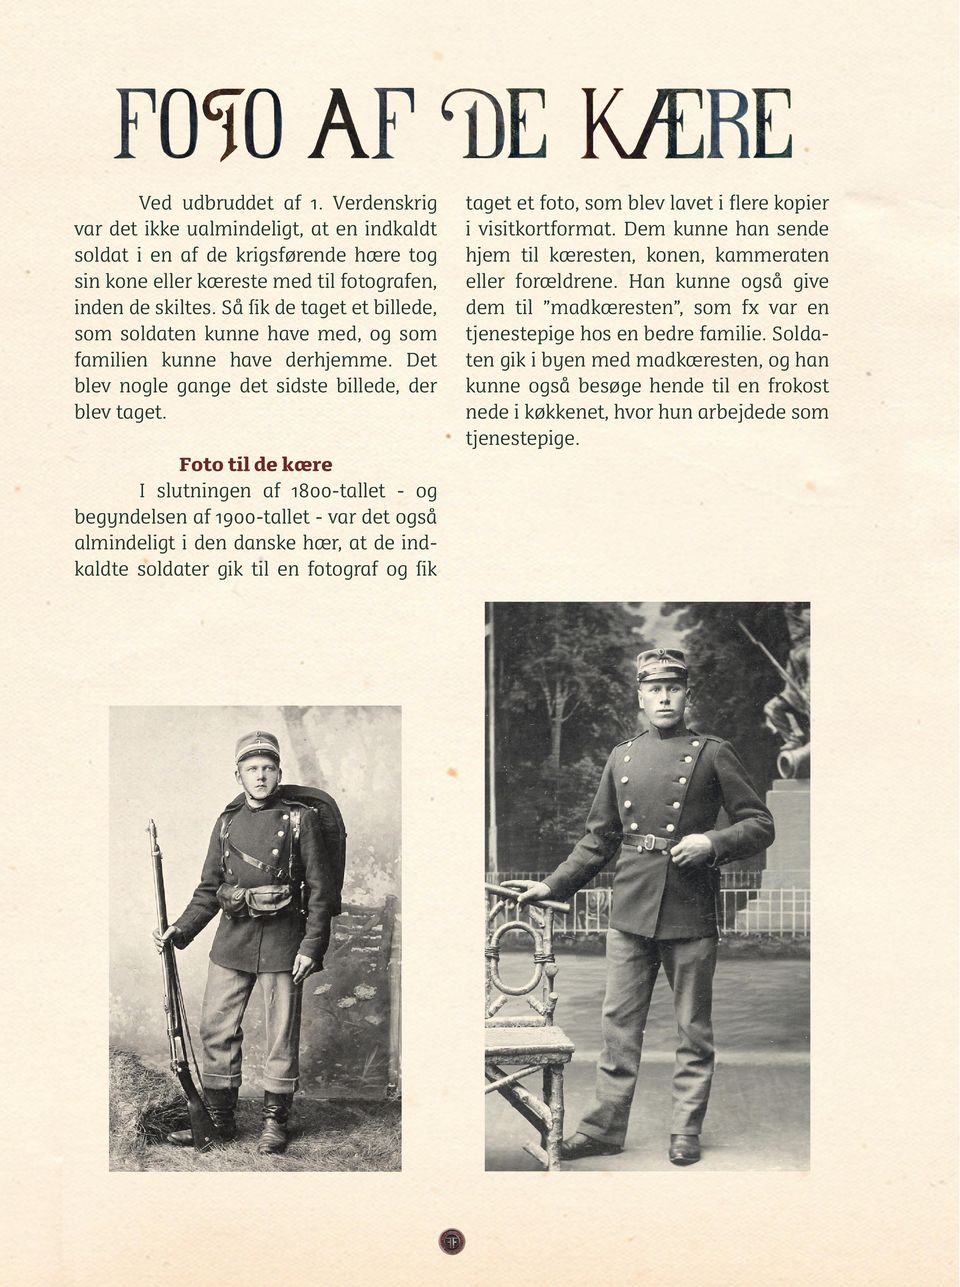 Foto til de kære I slutningen af 1800-tallet - og begyndelsen af 1900-tallet - var det også almindeligt i den danske hær, at de indkaldte soldater gik til en fotograf og fik taget et foto, som blev